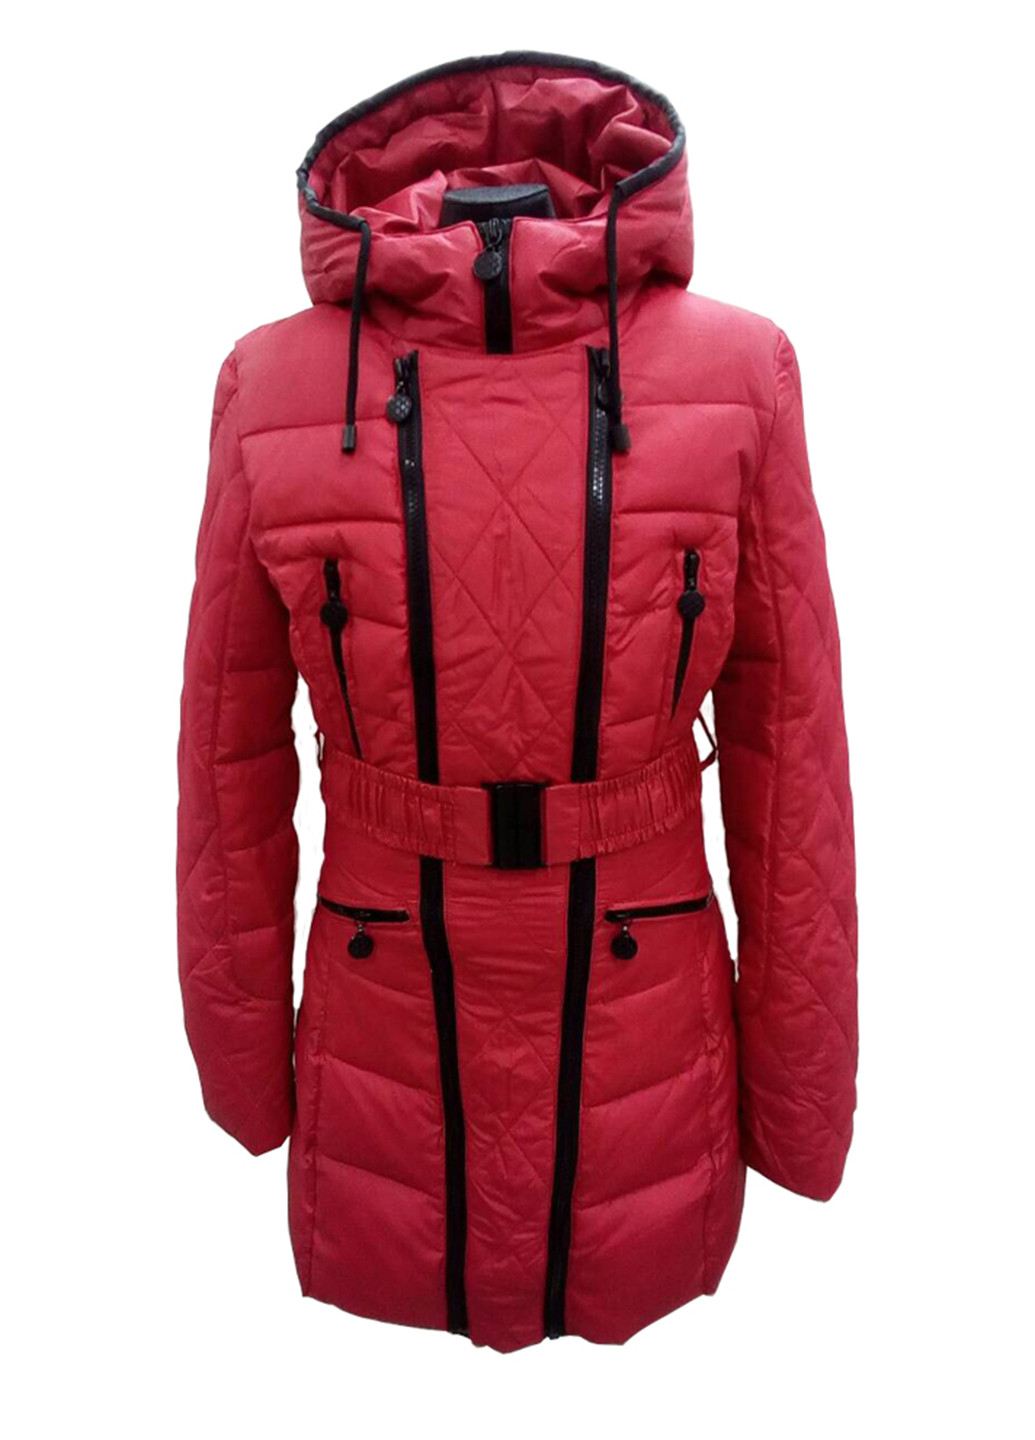 Красная зимняя куртка Geldeen Fox